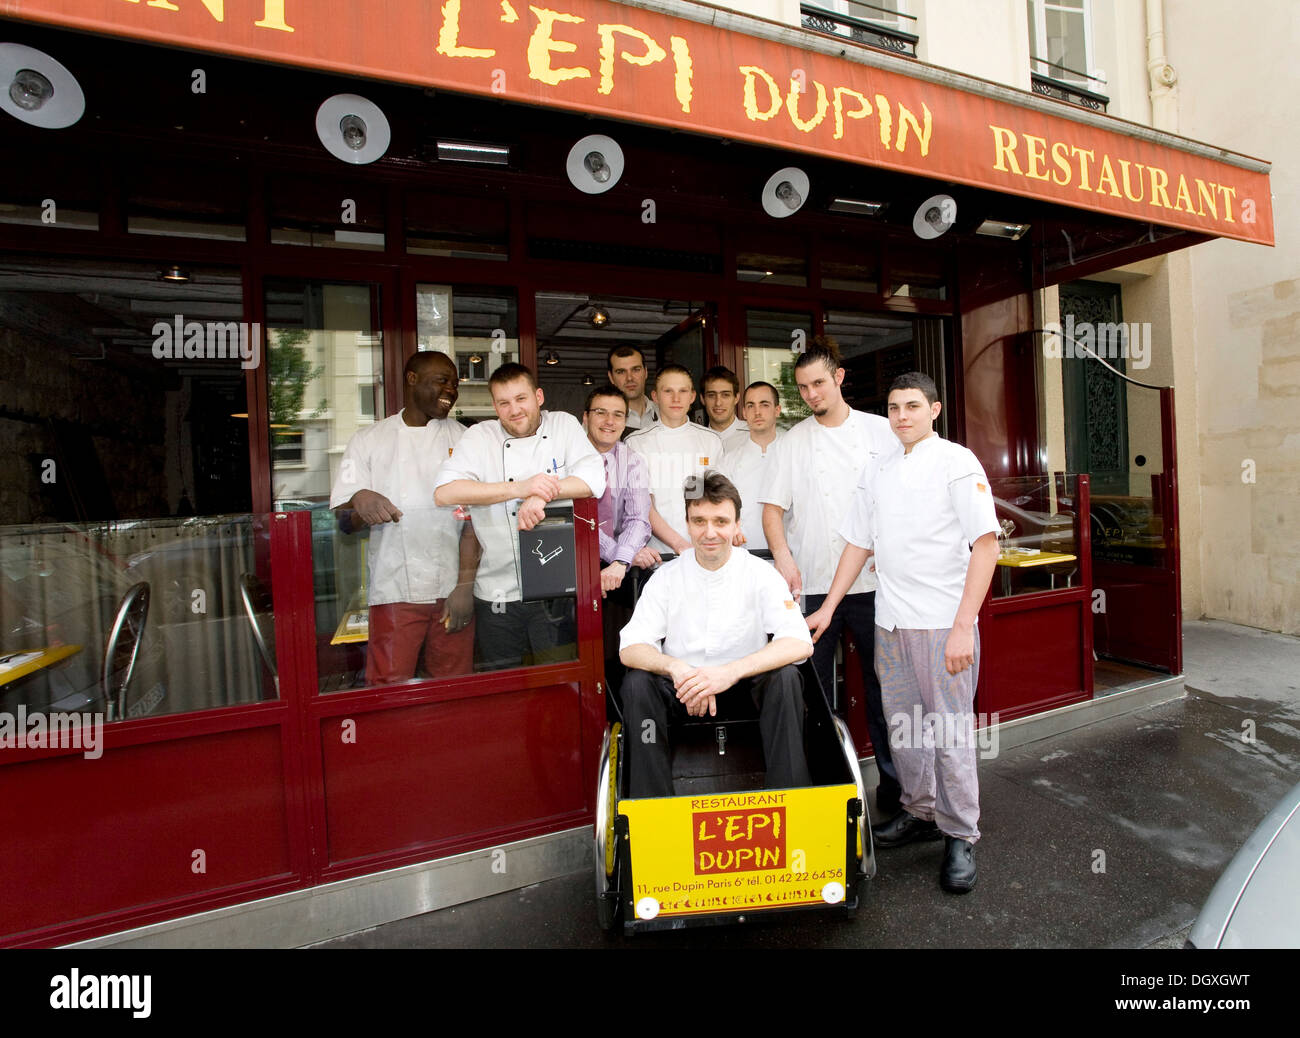 L'équipage du service L'Epi Dupin restaurant, chef François Pasteau, assis dans un wagon, 6ème arrondissement, Paris, France Banque D'Images